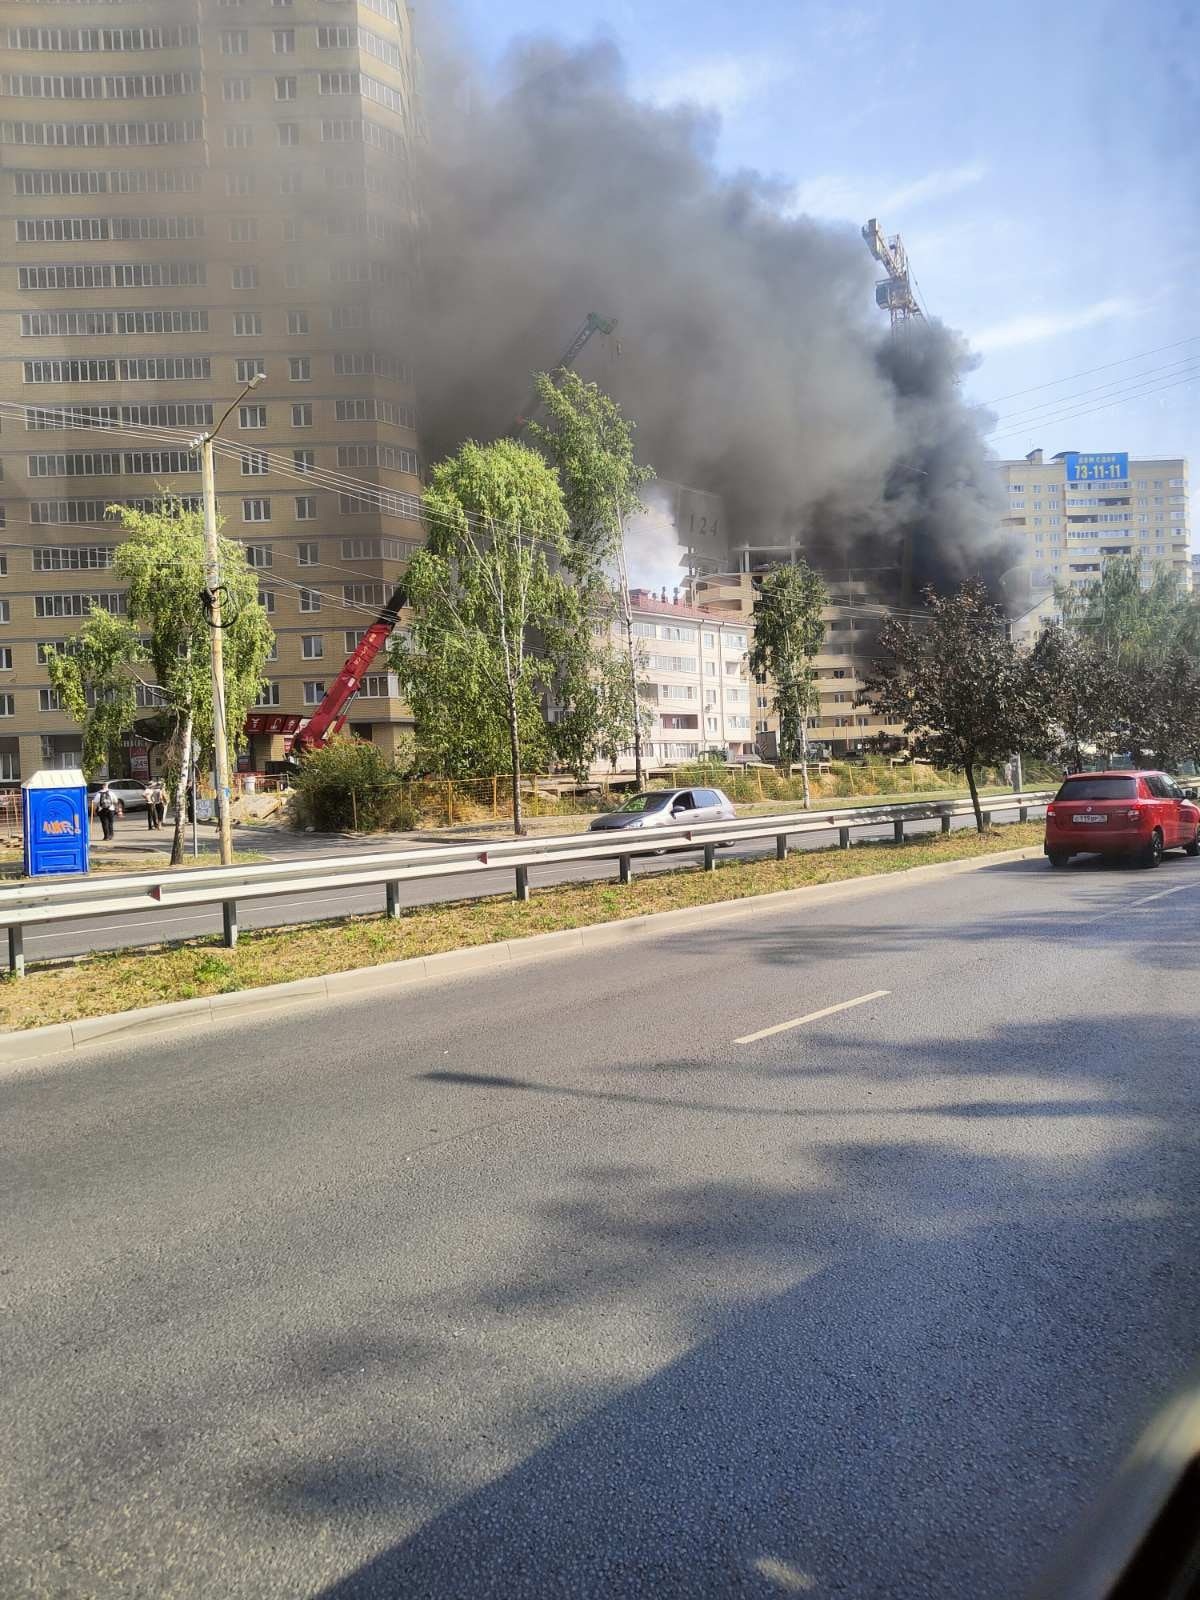 Столб черного дыма в Заволжском районе Ярославля взволновал местных жителей